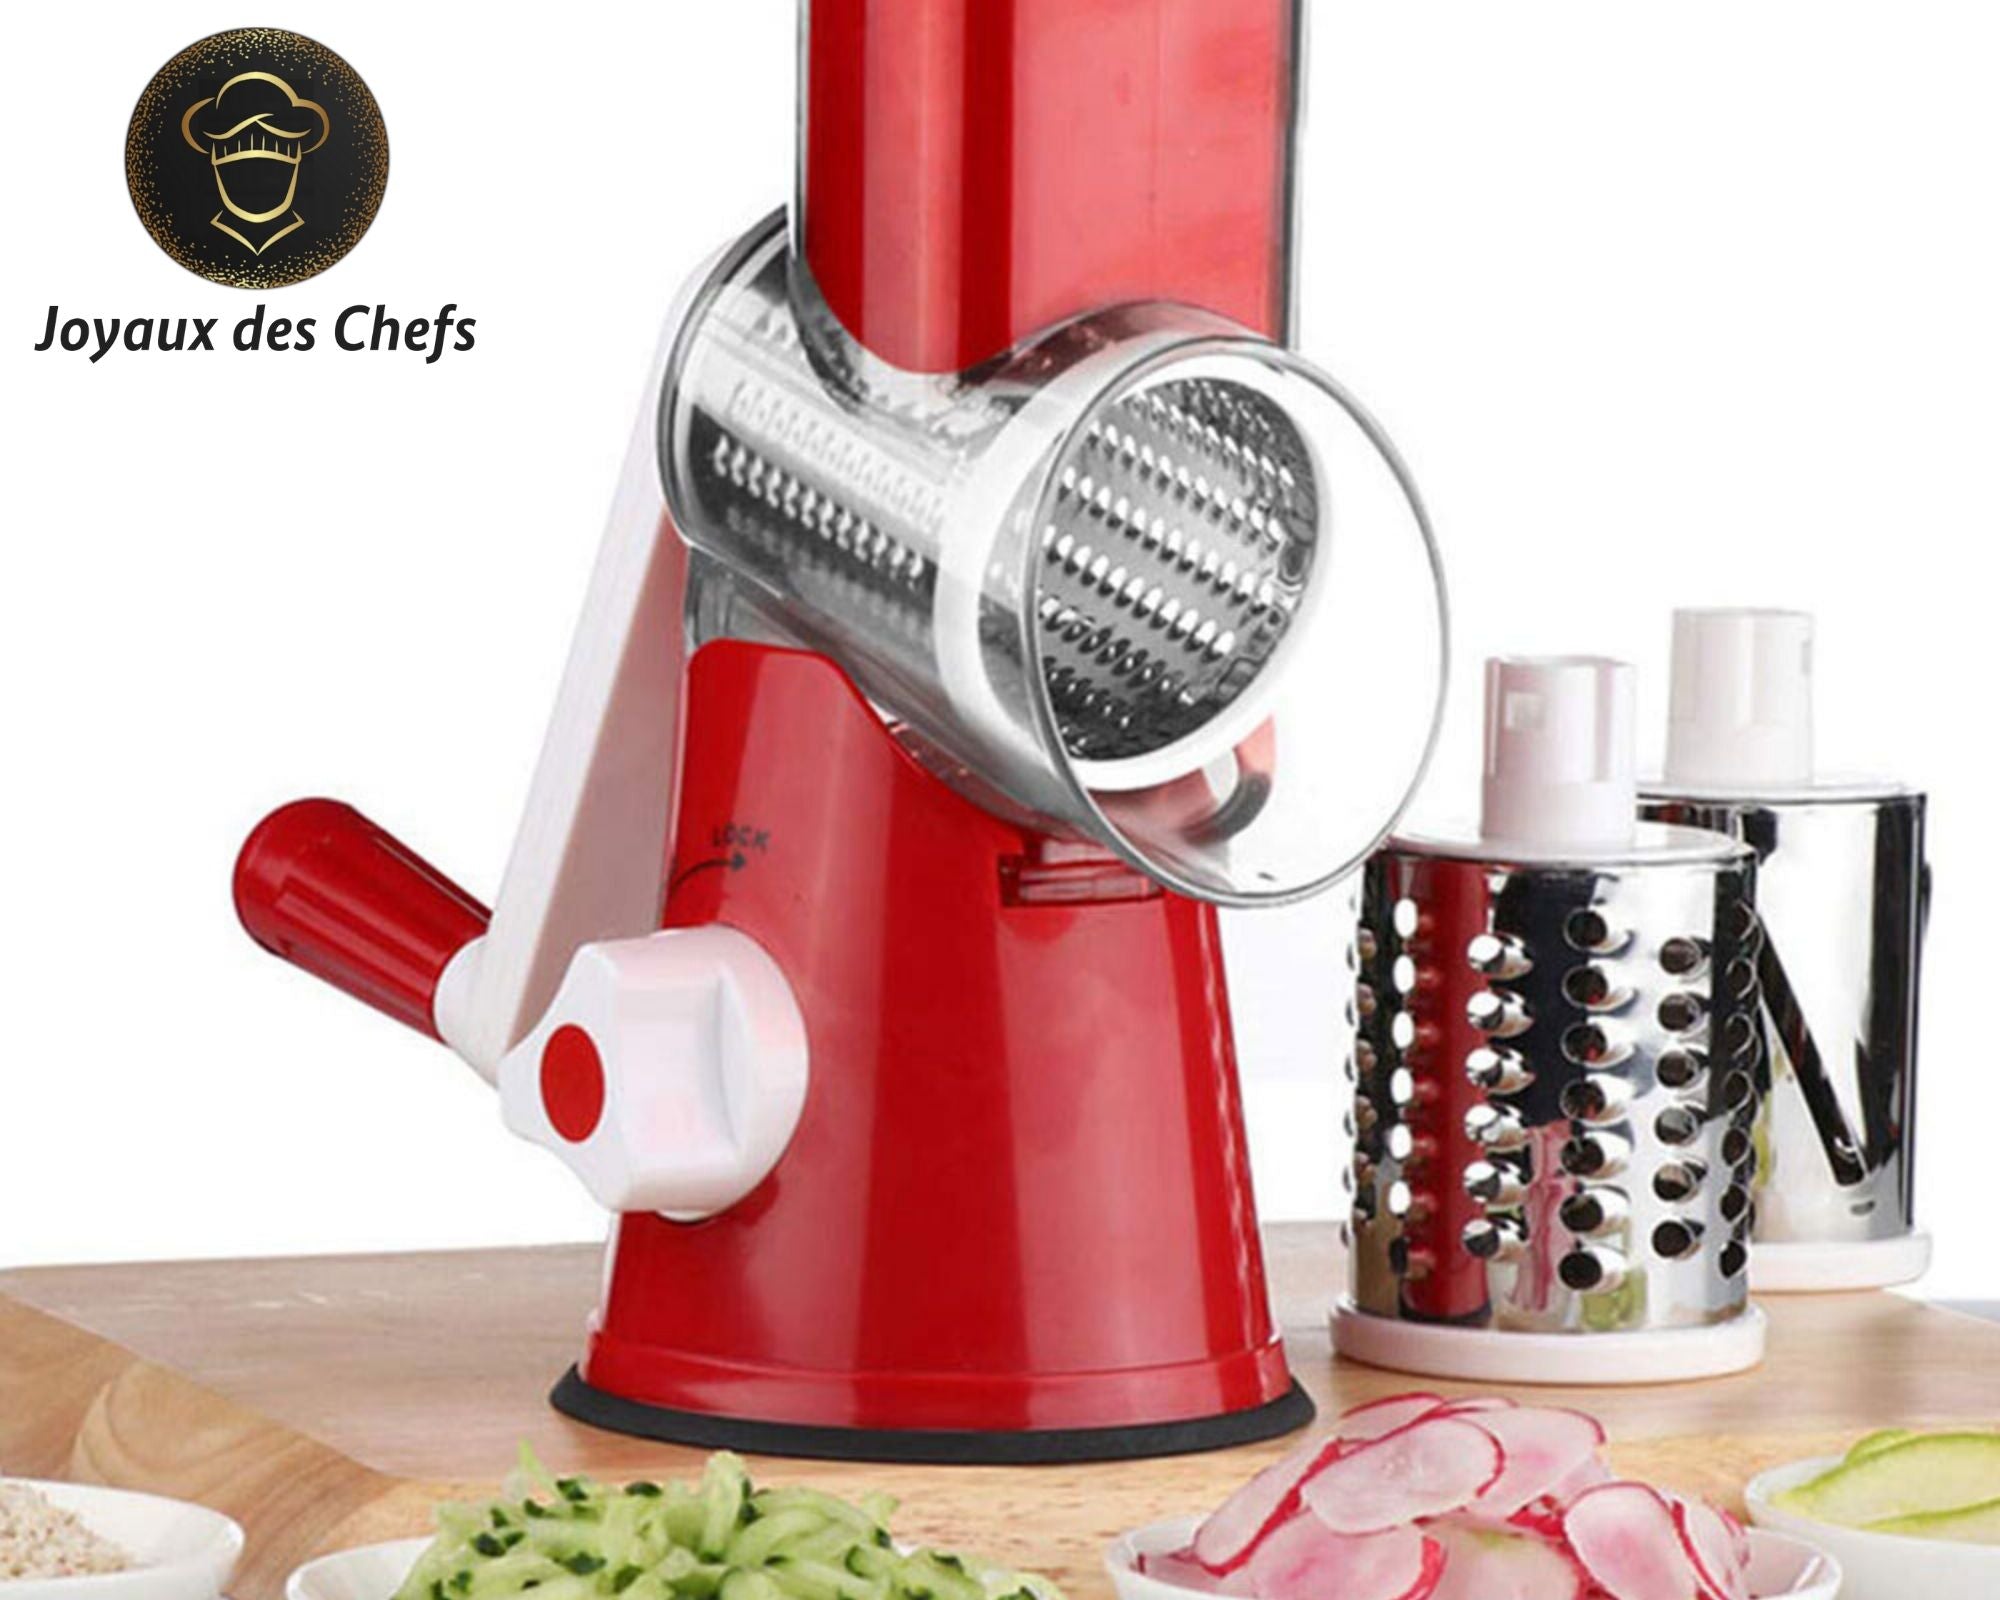 Machine à salade MOA - Coupe-légumes - Robot culinaire - Râpe électrique  SM903